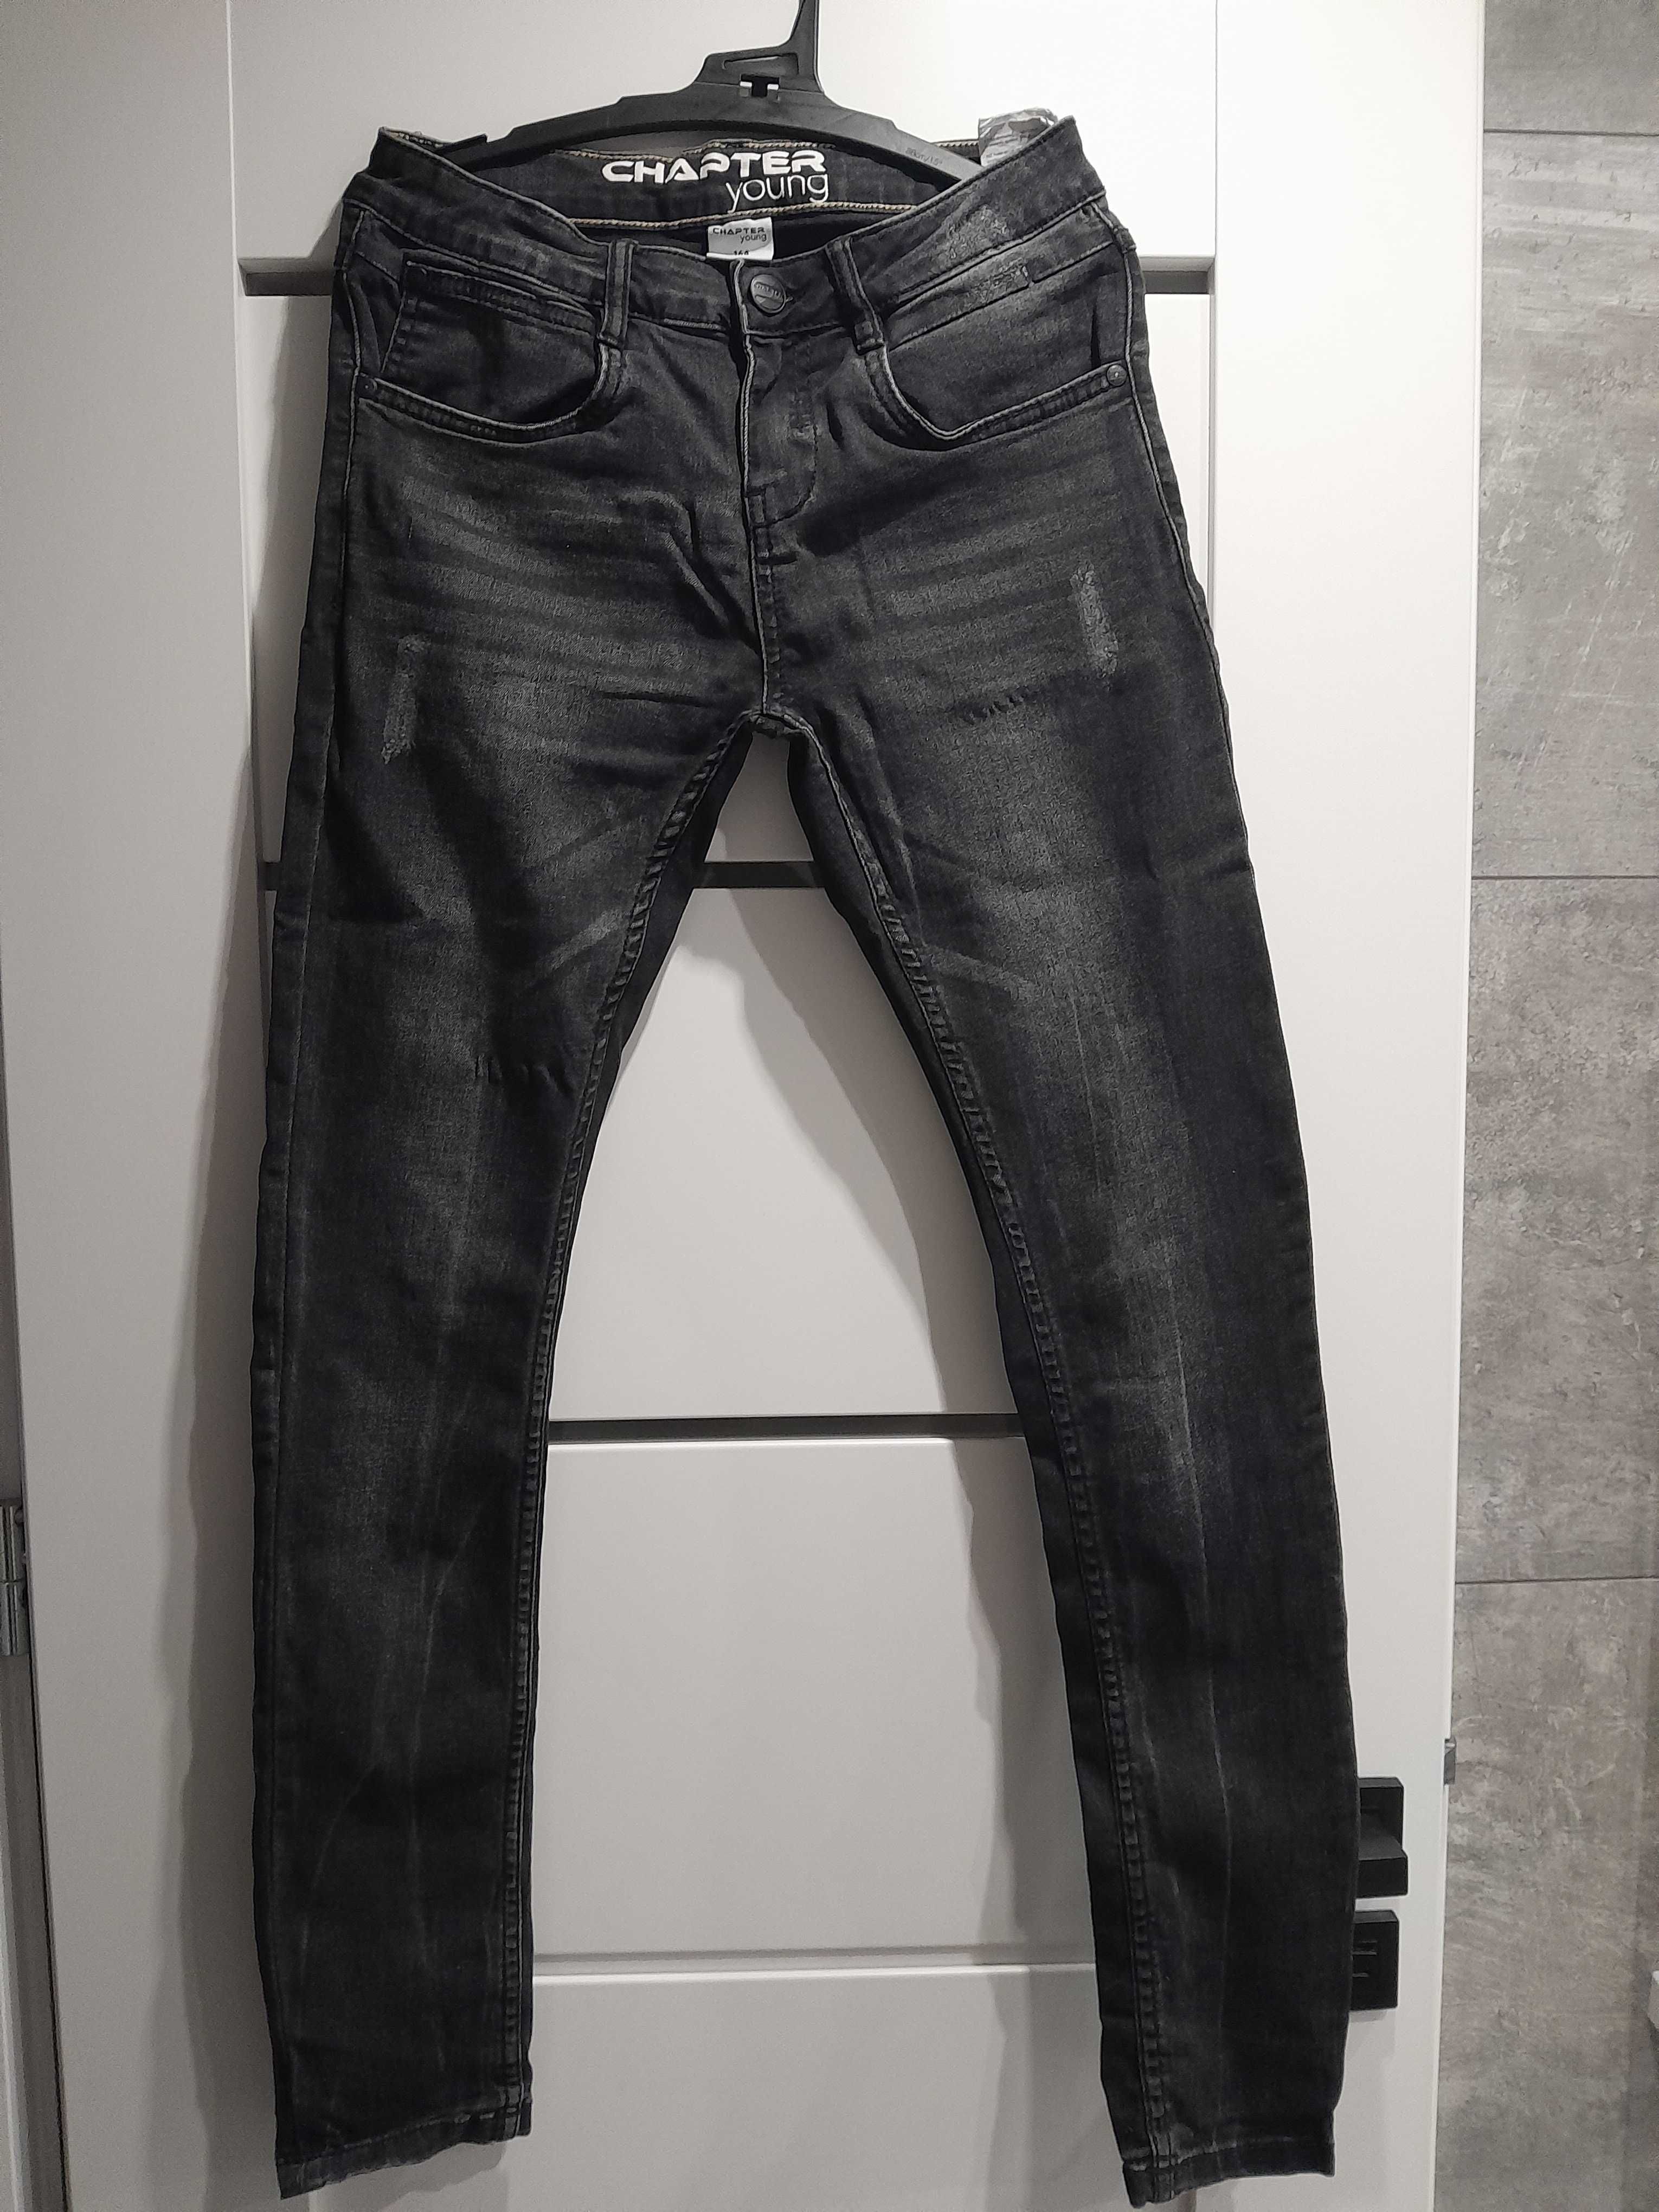 Jeansy czarne, zwężane nogawki, rozmiar 164